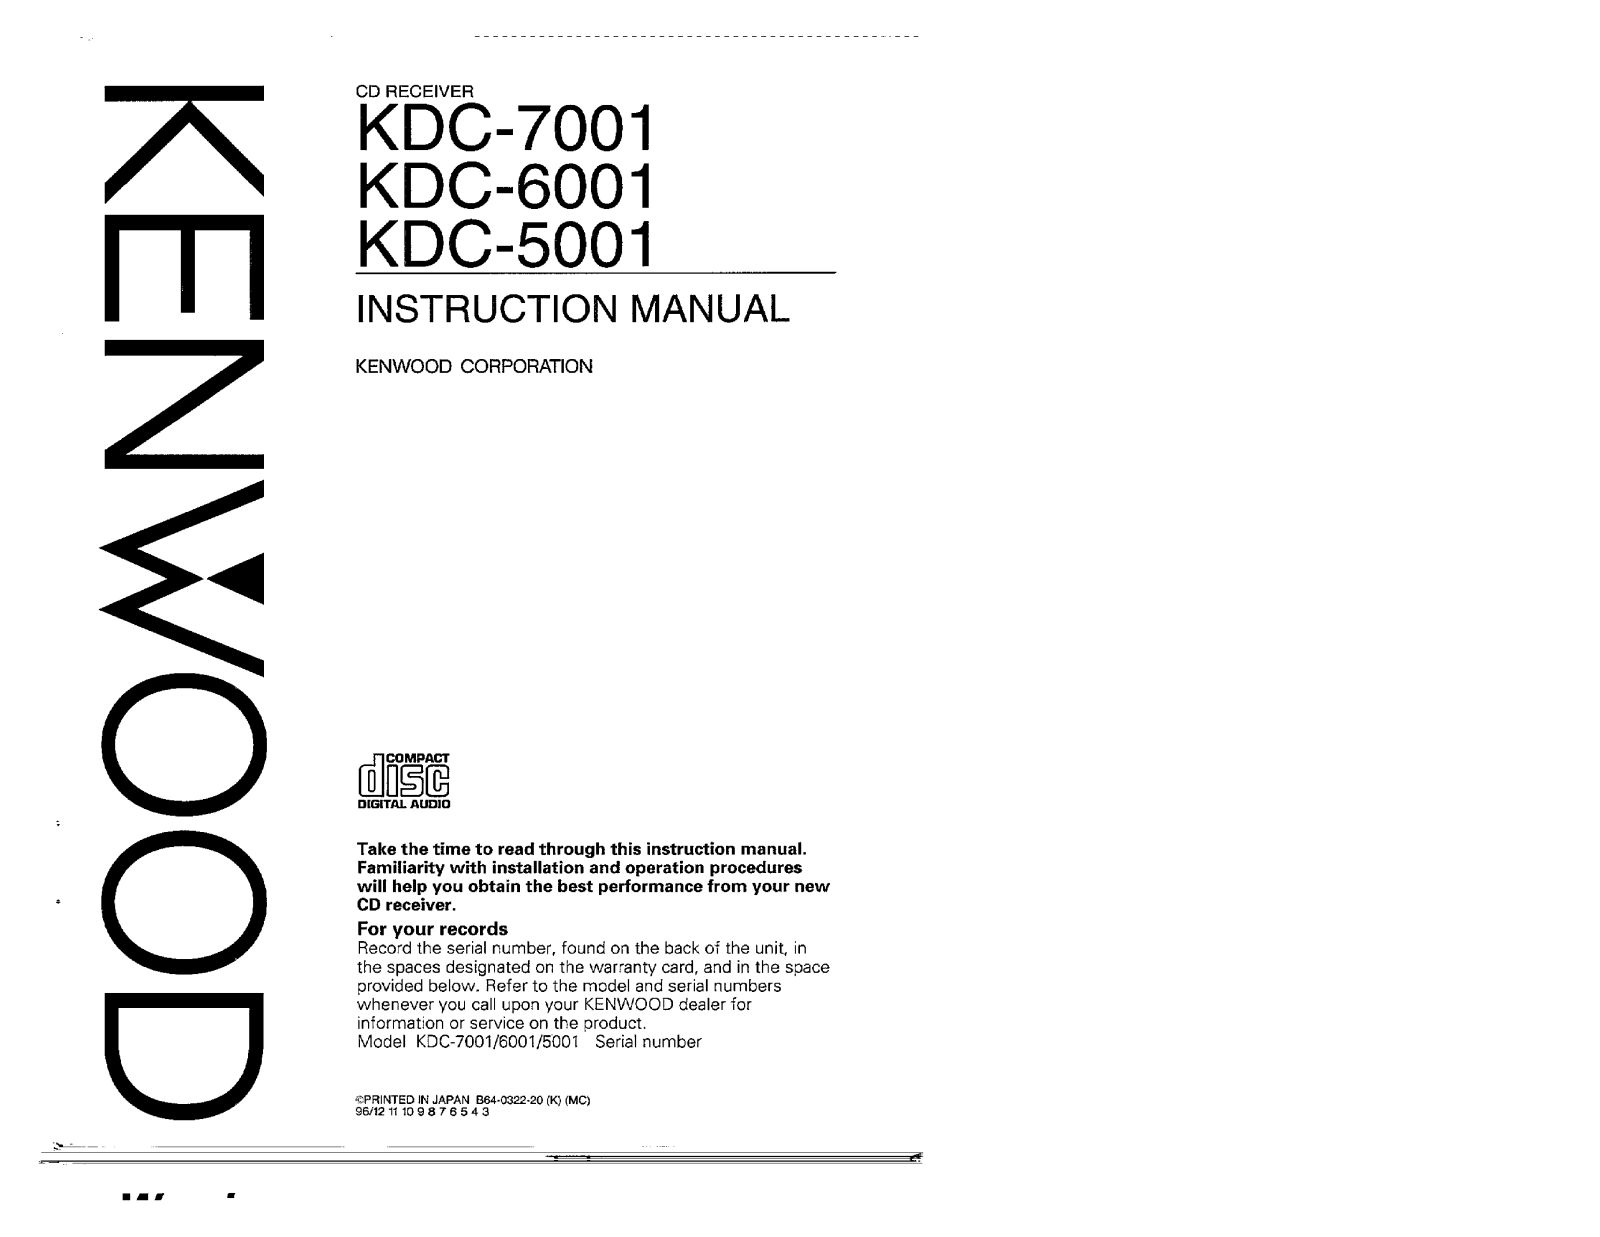 Kenwood KDC-7001, KDC-5001, KDC-6001 Owner's Manual